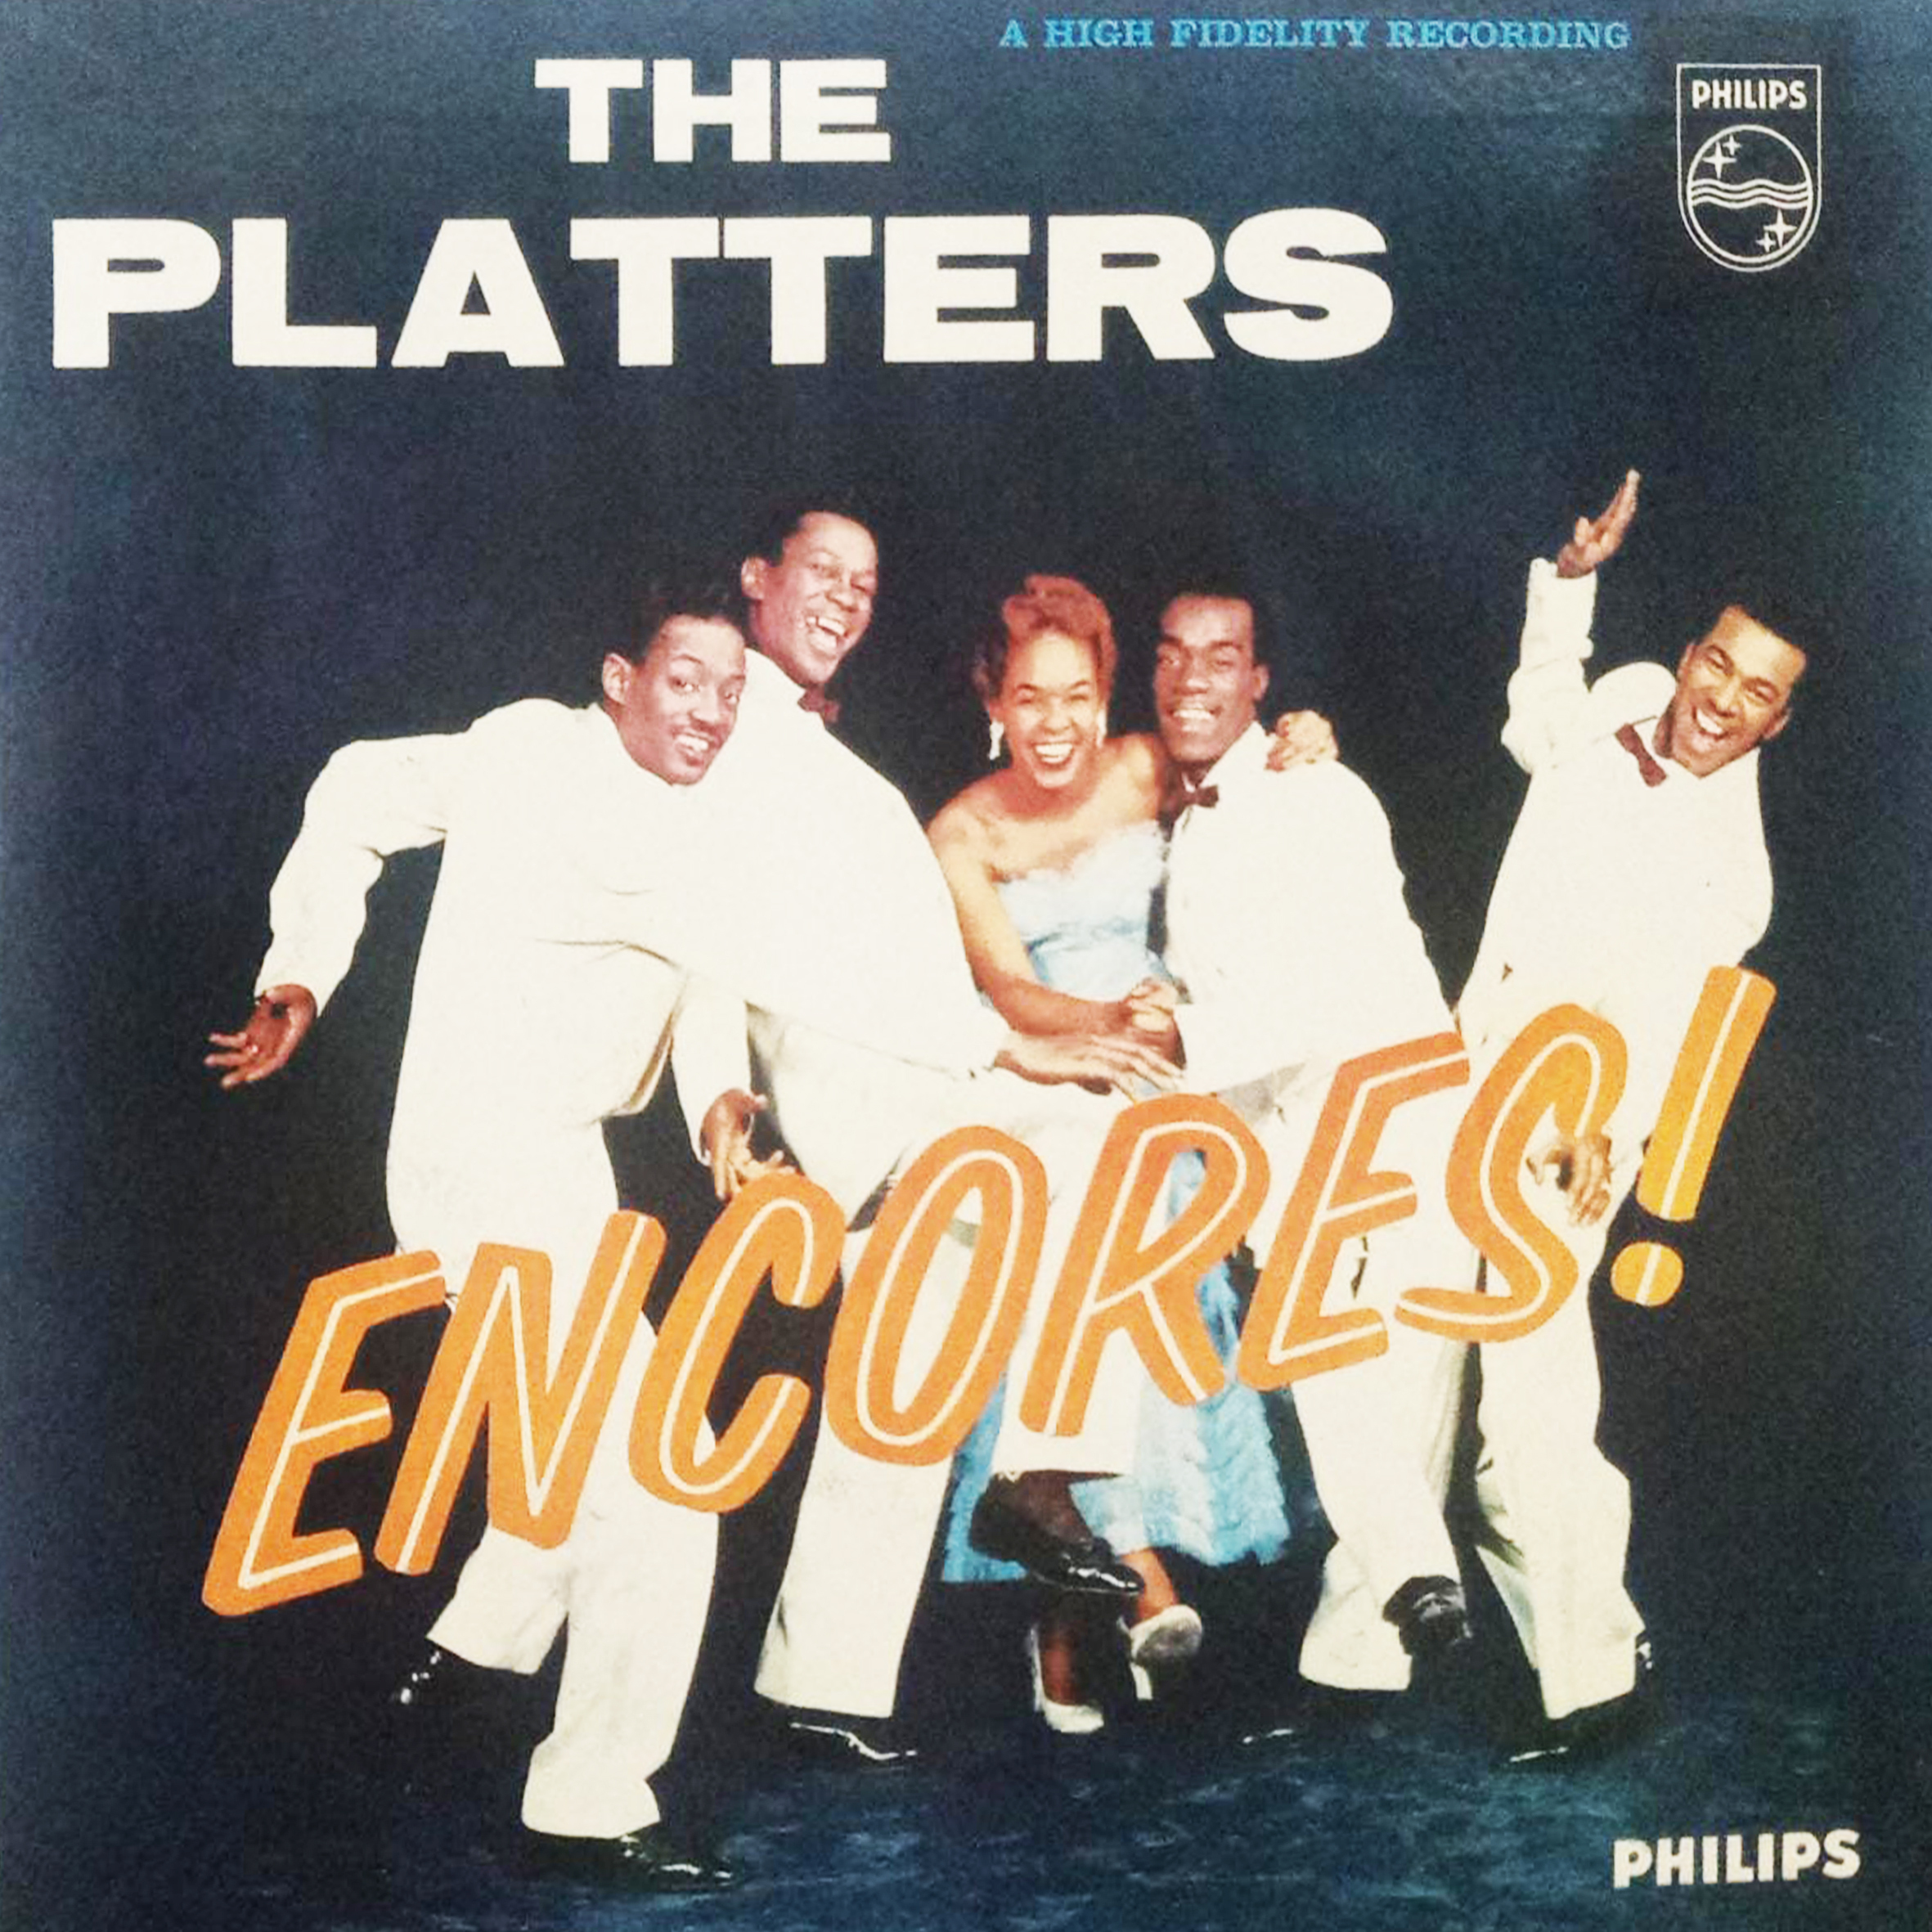 Vinil - Platters The - Encores